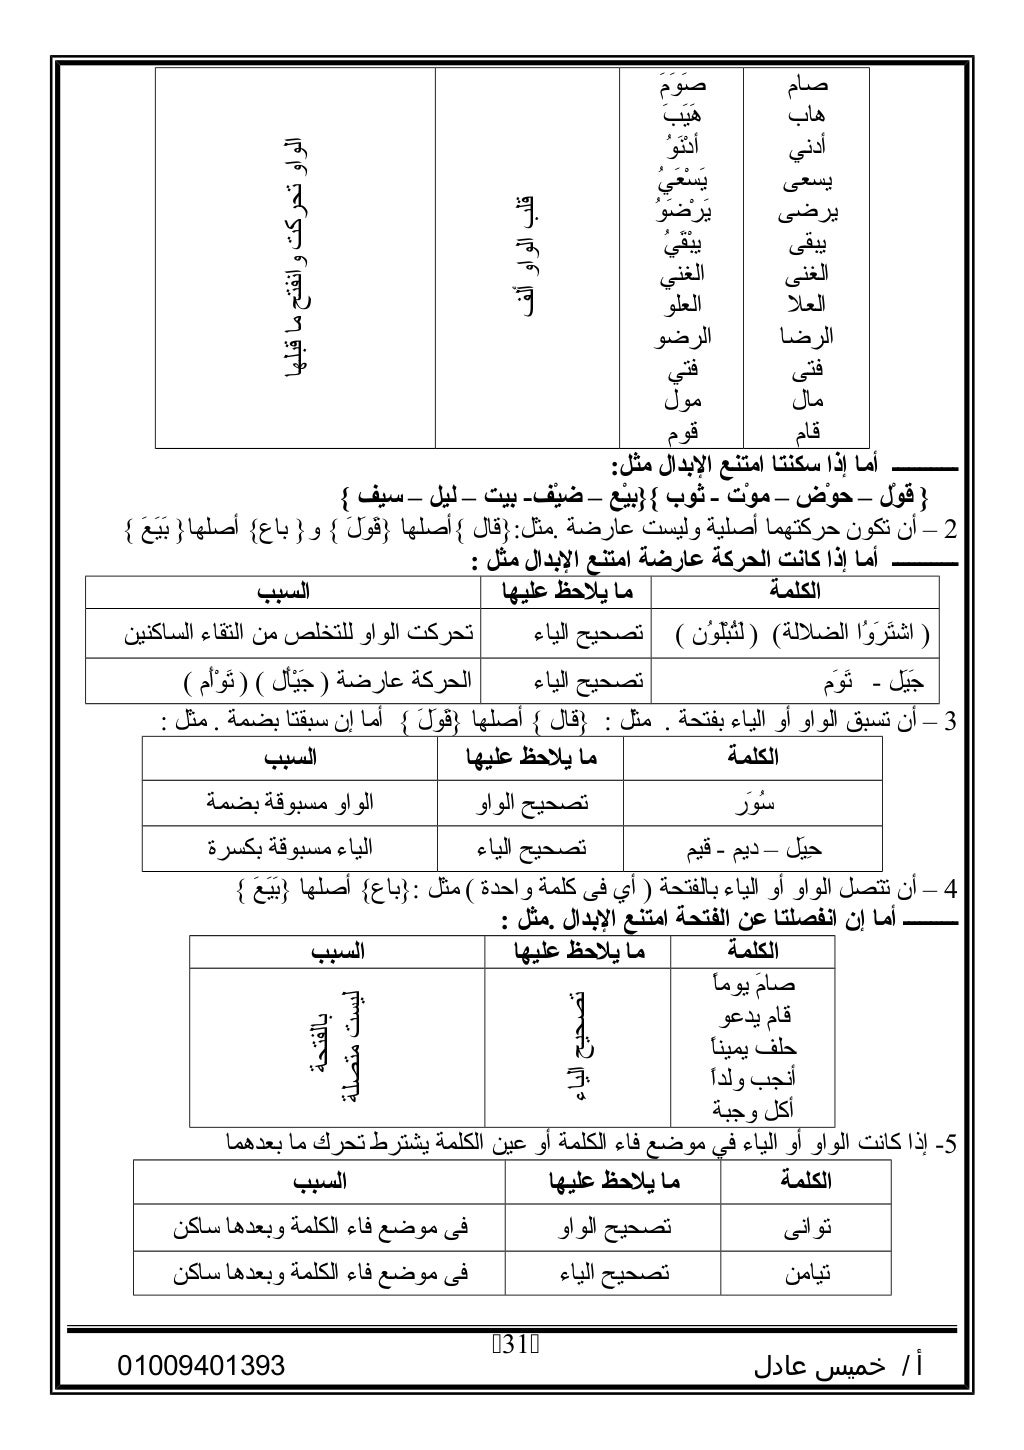 مذكرة الصرف علمي للصف الثالث الثانوي الأزهري 2016 للأستاذ خميس عادل